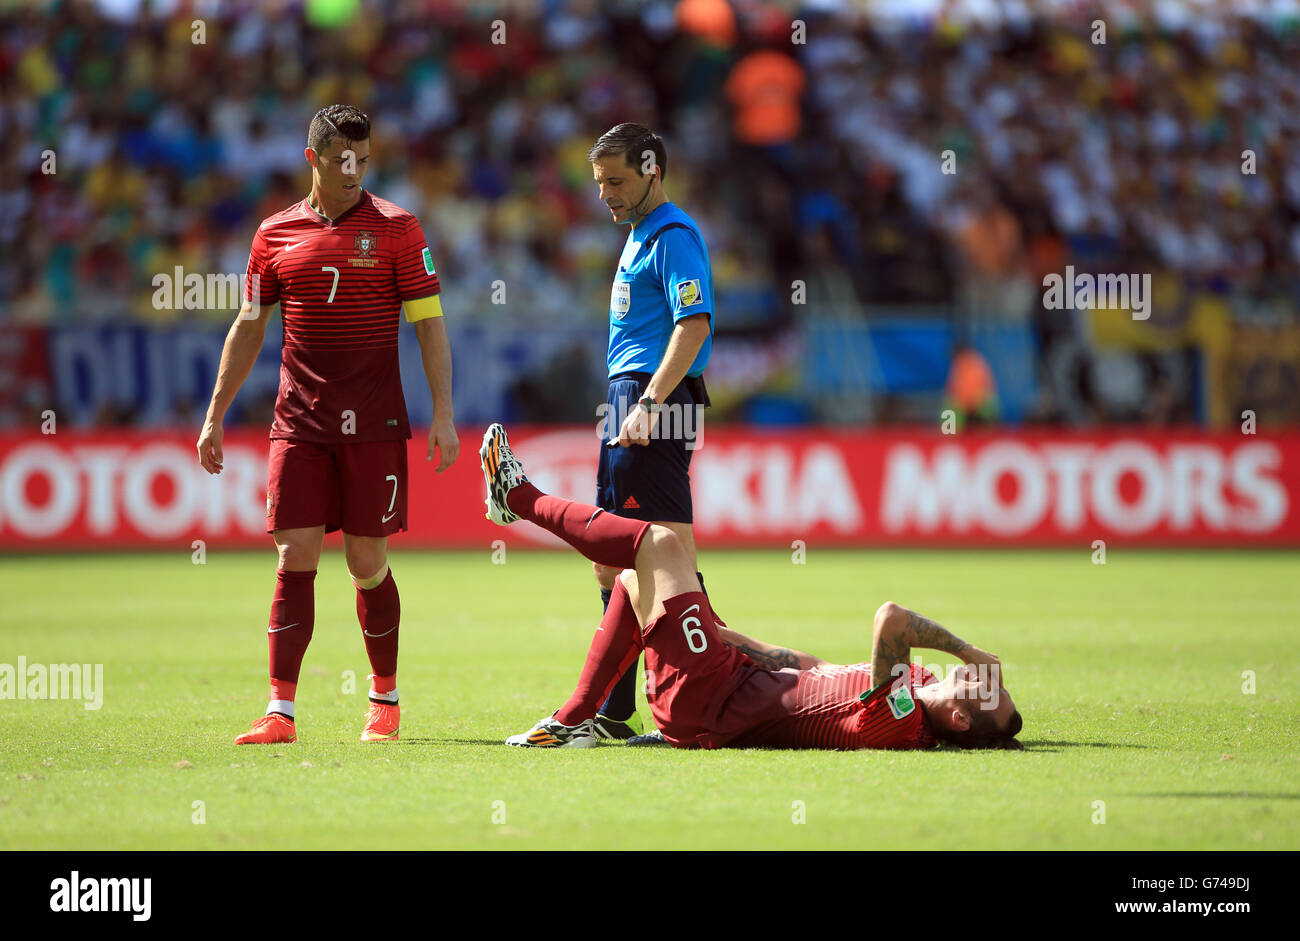 Calcio - Coppa del mondo FIFA 2014 - Gruppo G - Germania v Portogallo - Arena Fonte Nova. Hugo Almeida in Portogallo si trova sul pavimento ferito Foto Stock